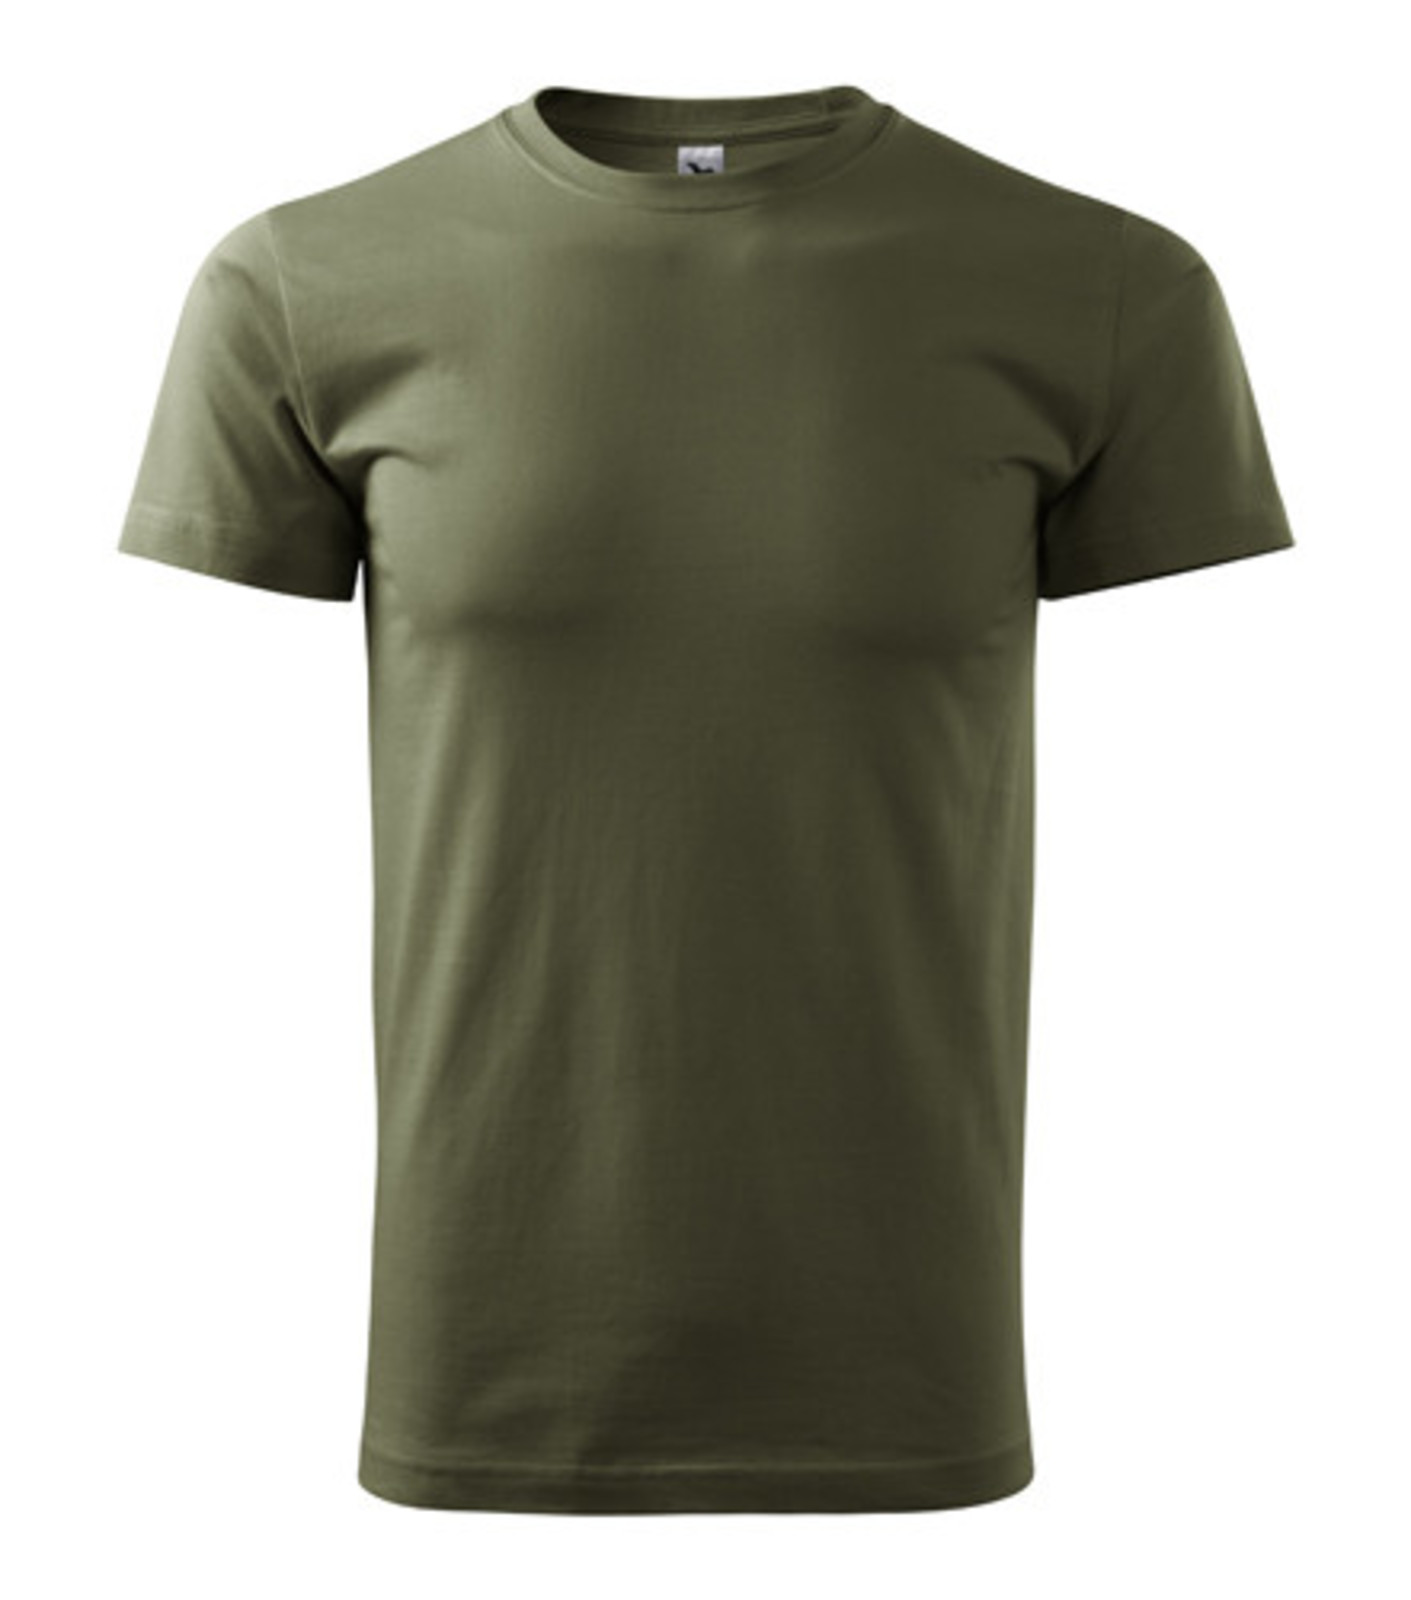 Unisex tričko Malfini Heavy New 137 - veľkosť: S, farba: military